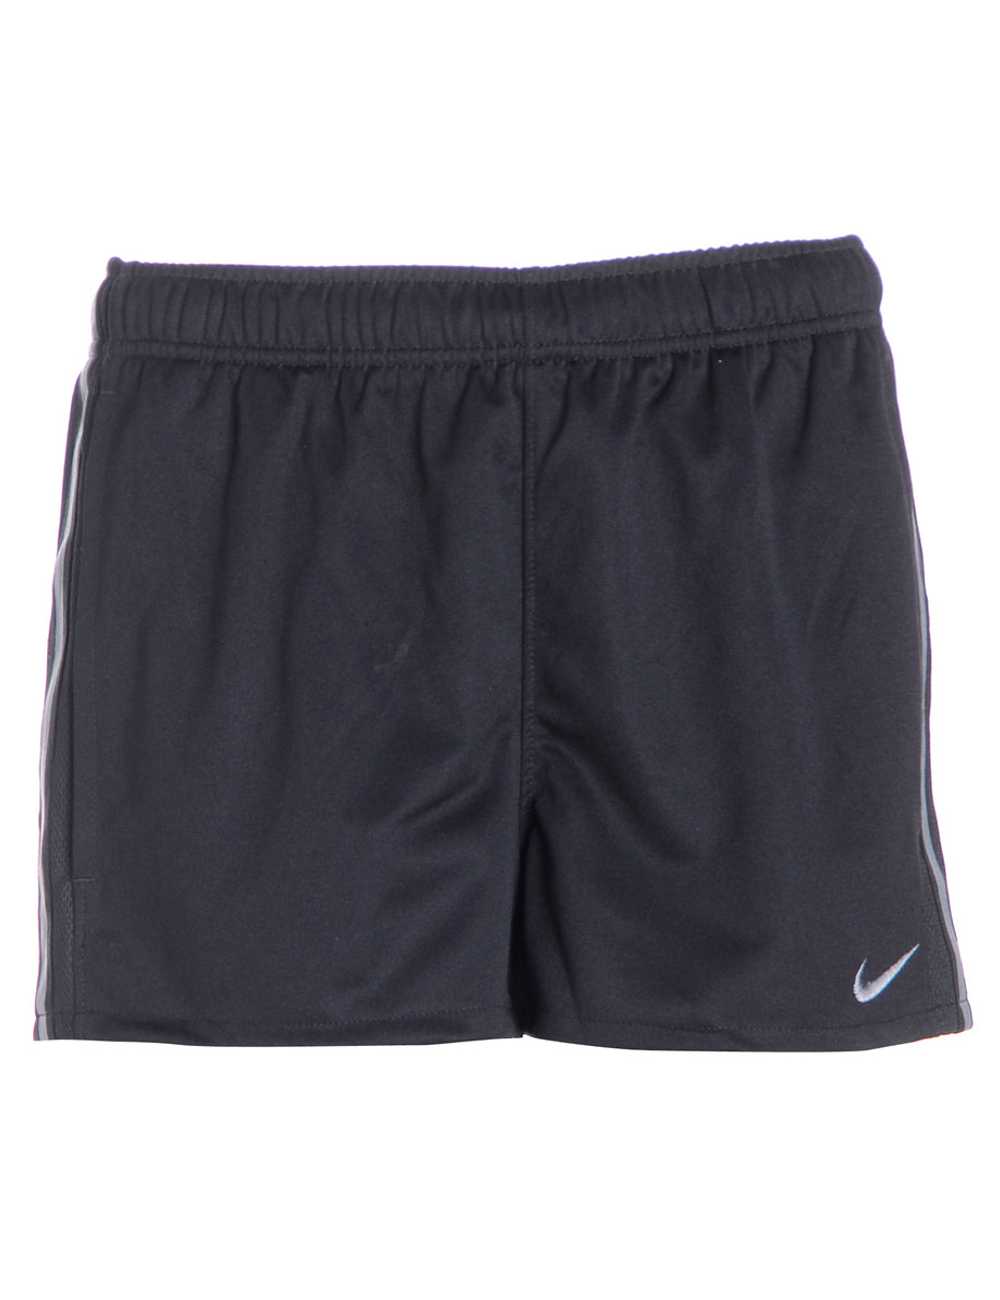 Reworked Nike Sports Shorts - image 2